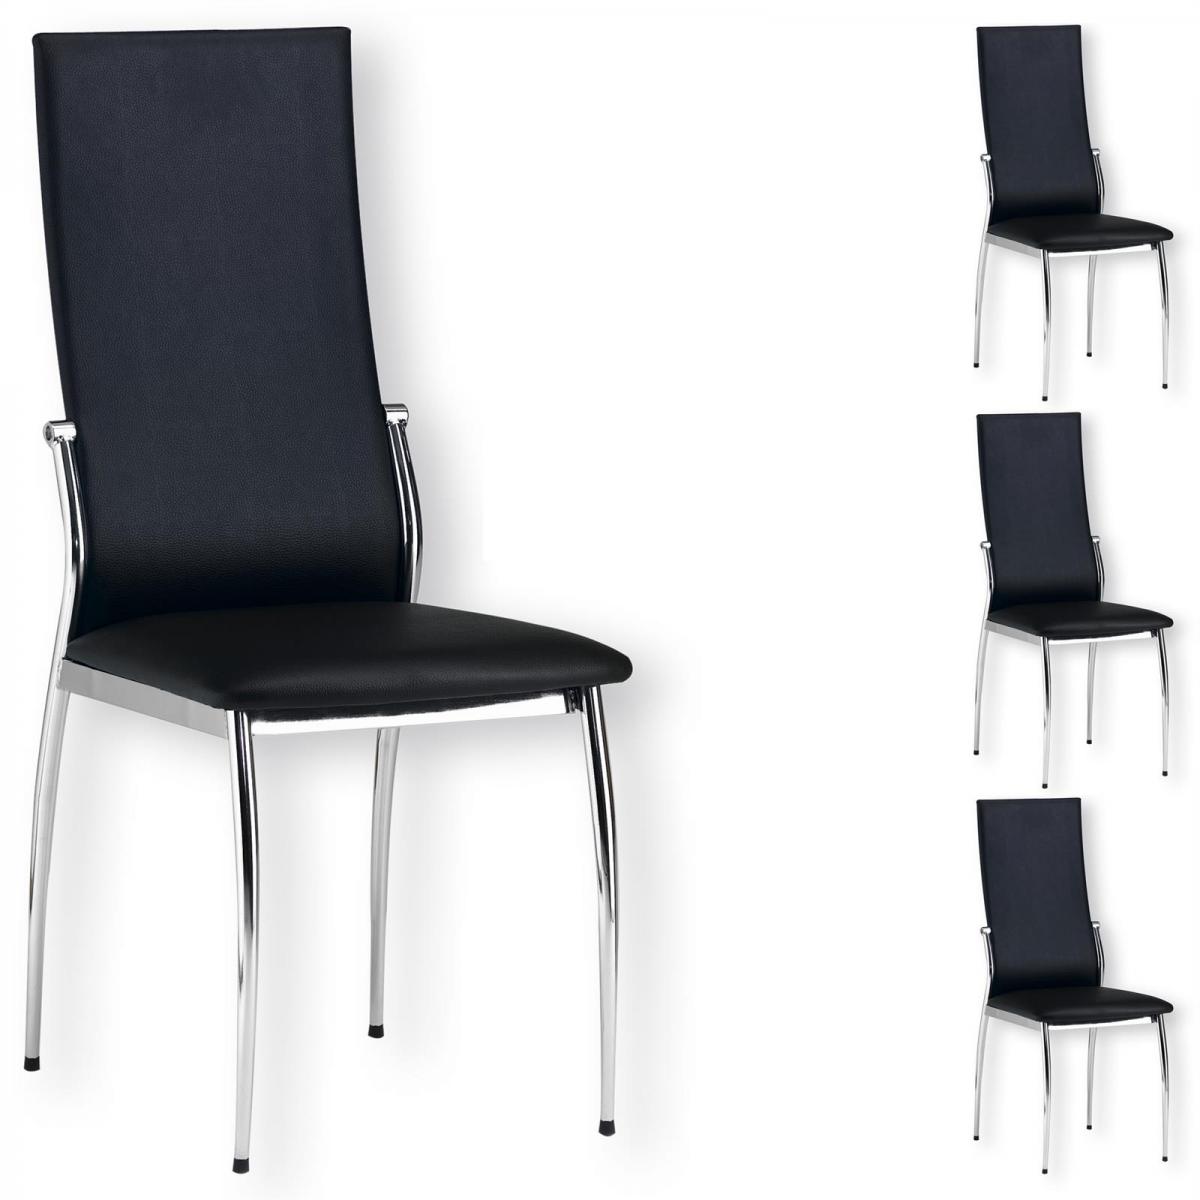 Idimex - Lot de 4 chaises DORIS, en synthétique noir - Chaises